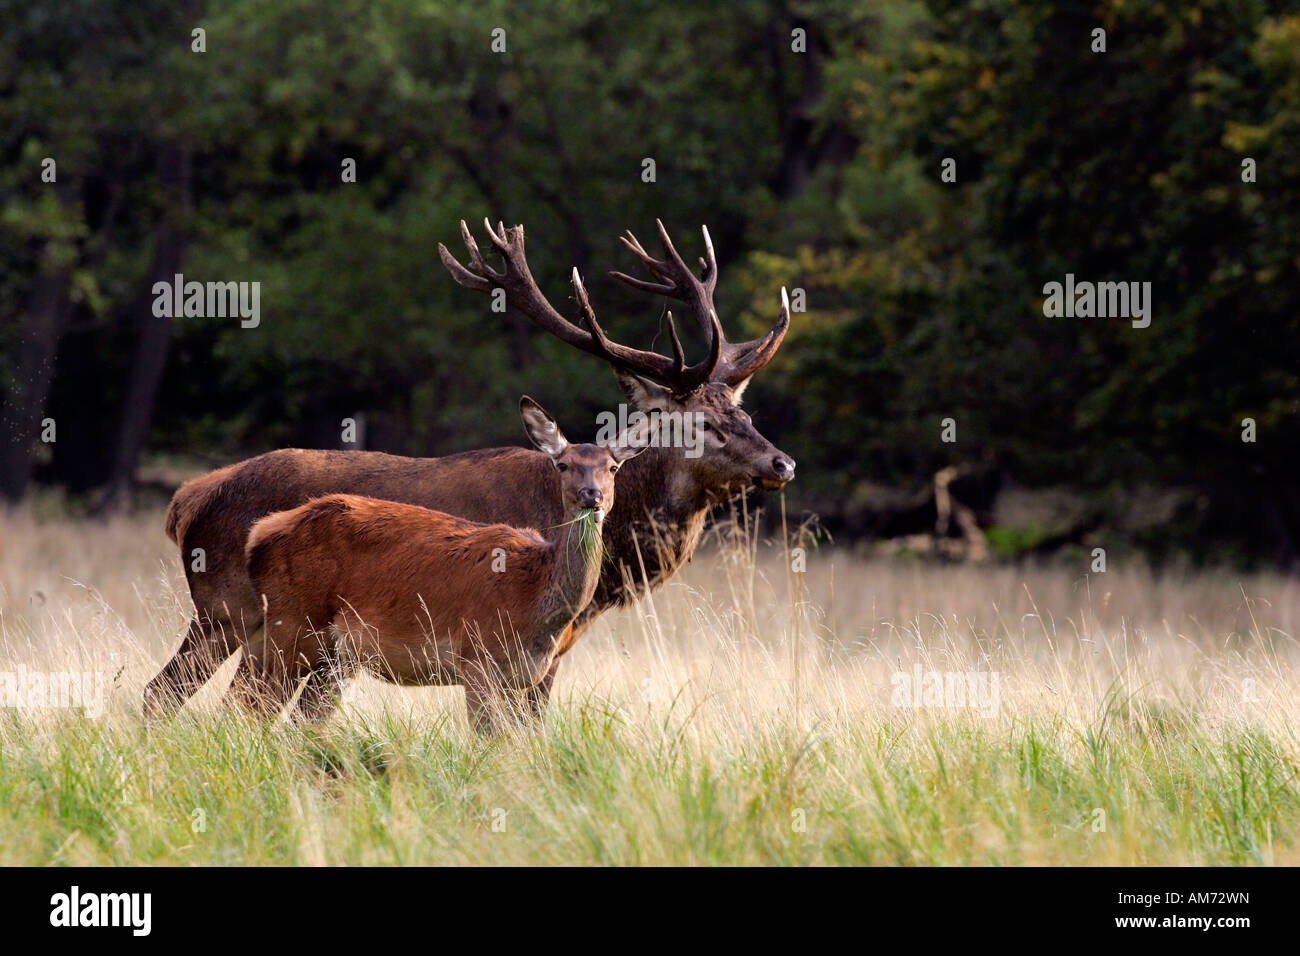 Il cervo rosso e hind durante il rut - cervi in calore - comportamento - maschio e femmina (Cervus elaphus) Foto Stock